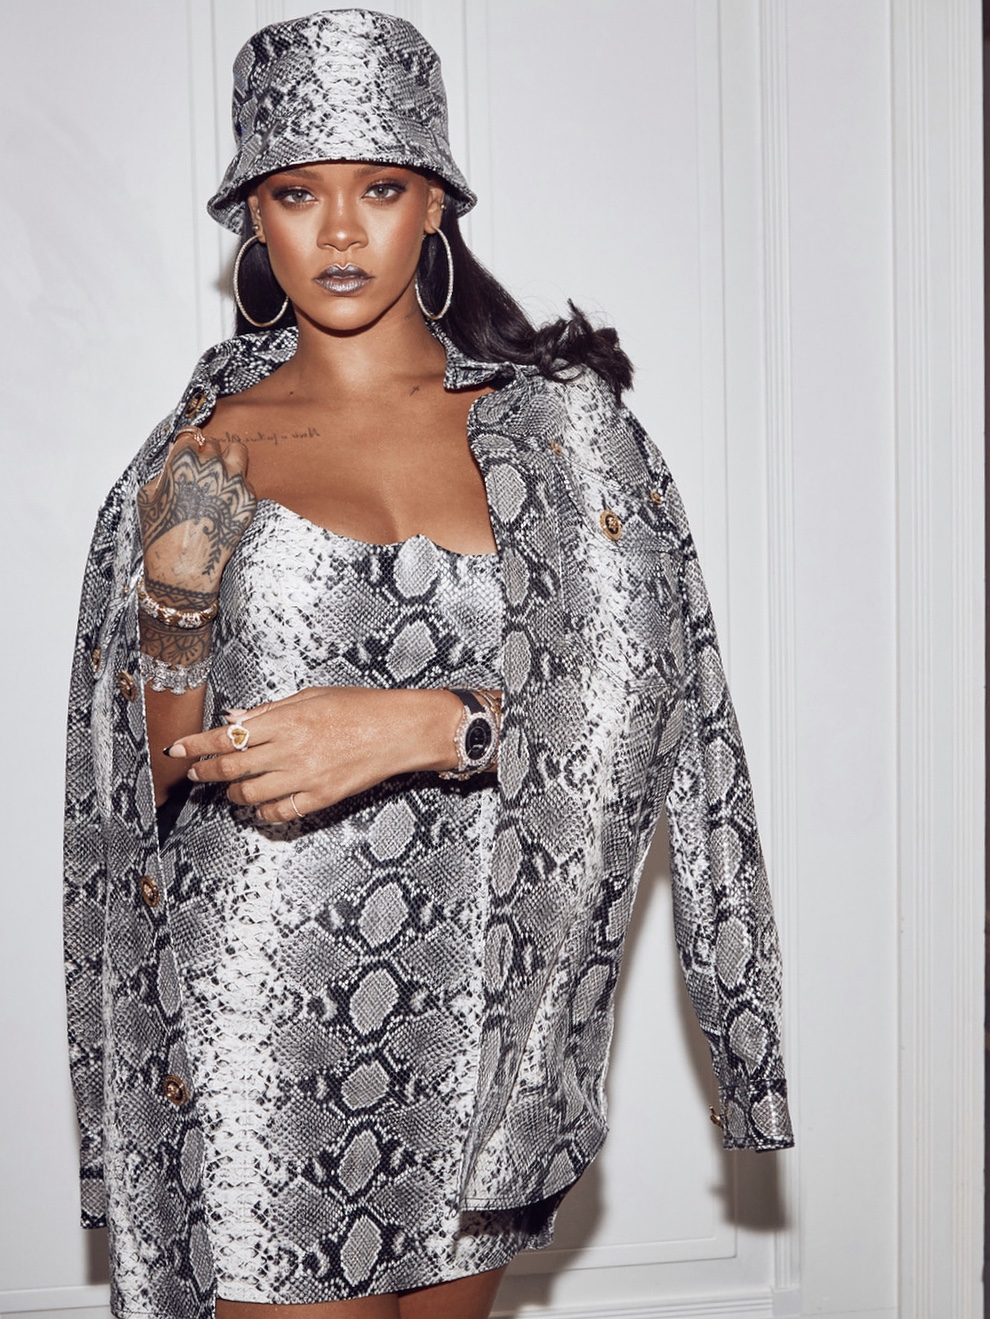 Rihanna in Custom Atlier Versace